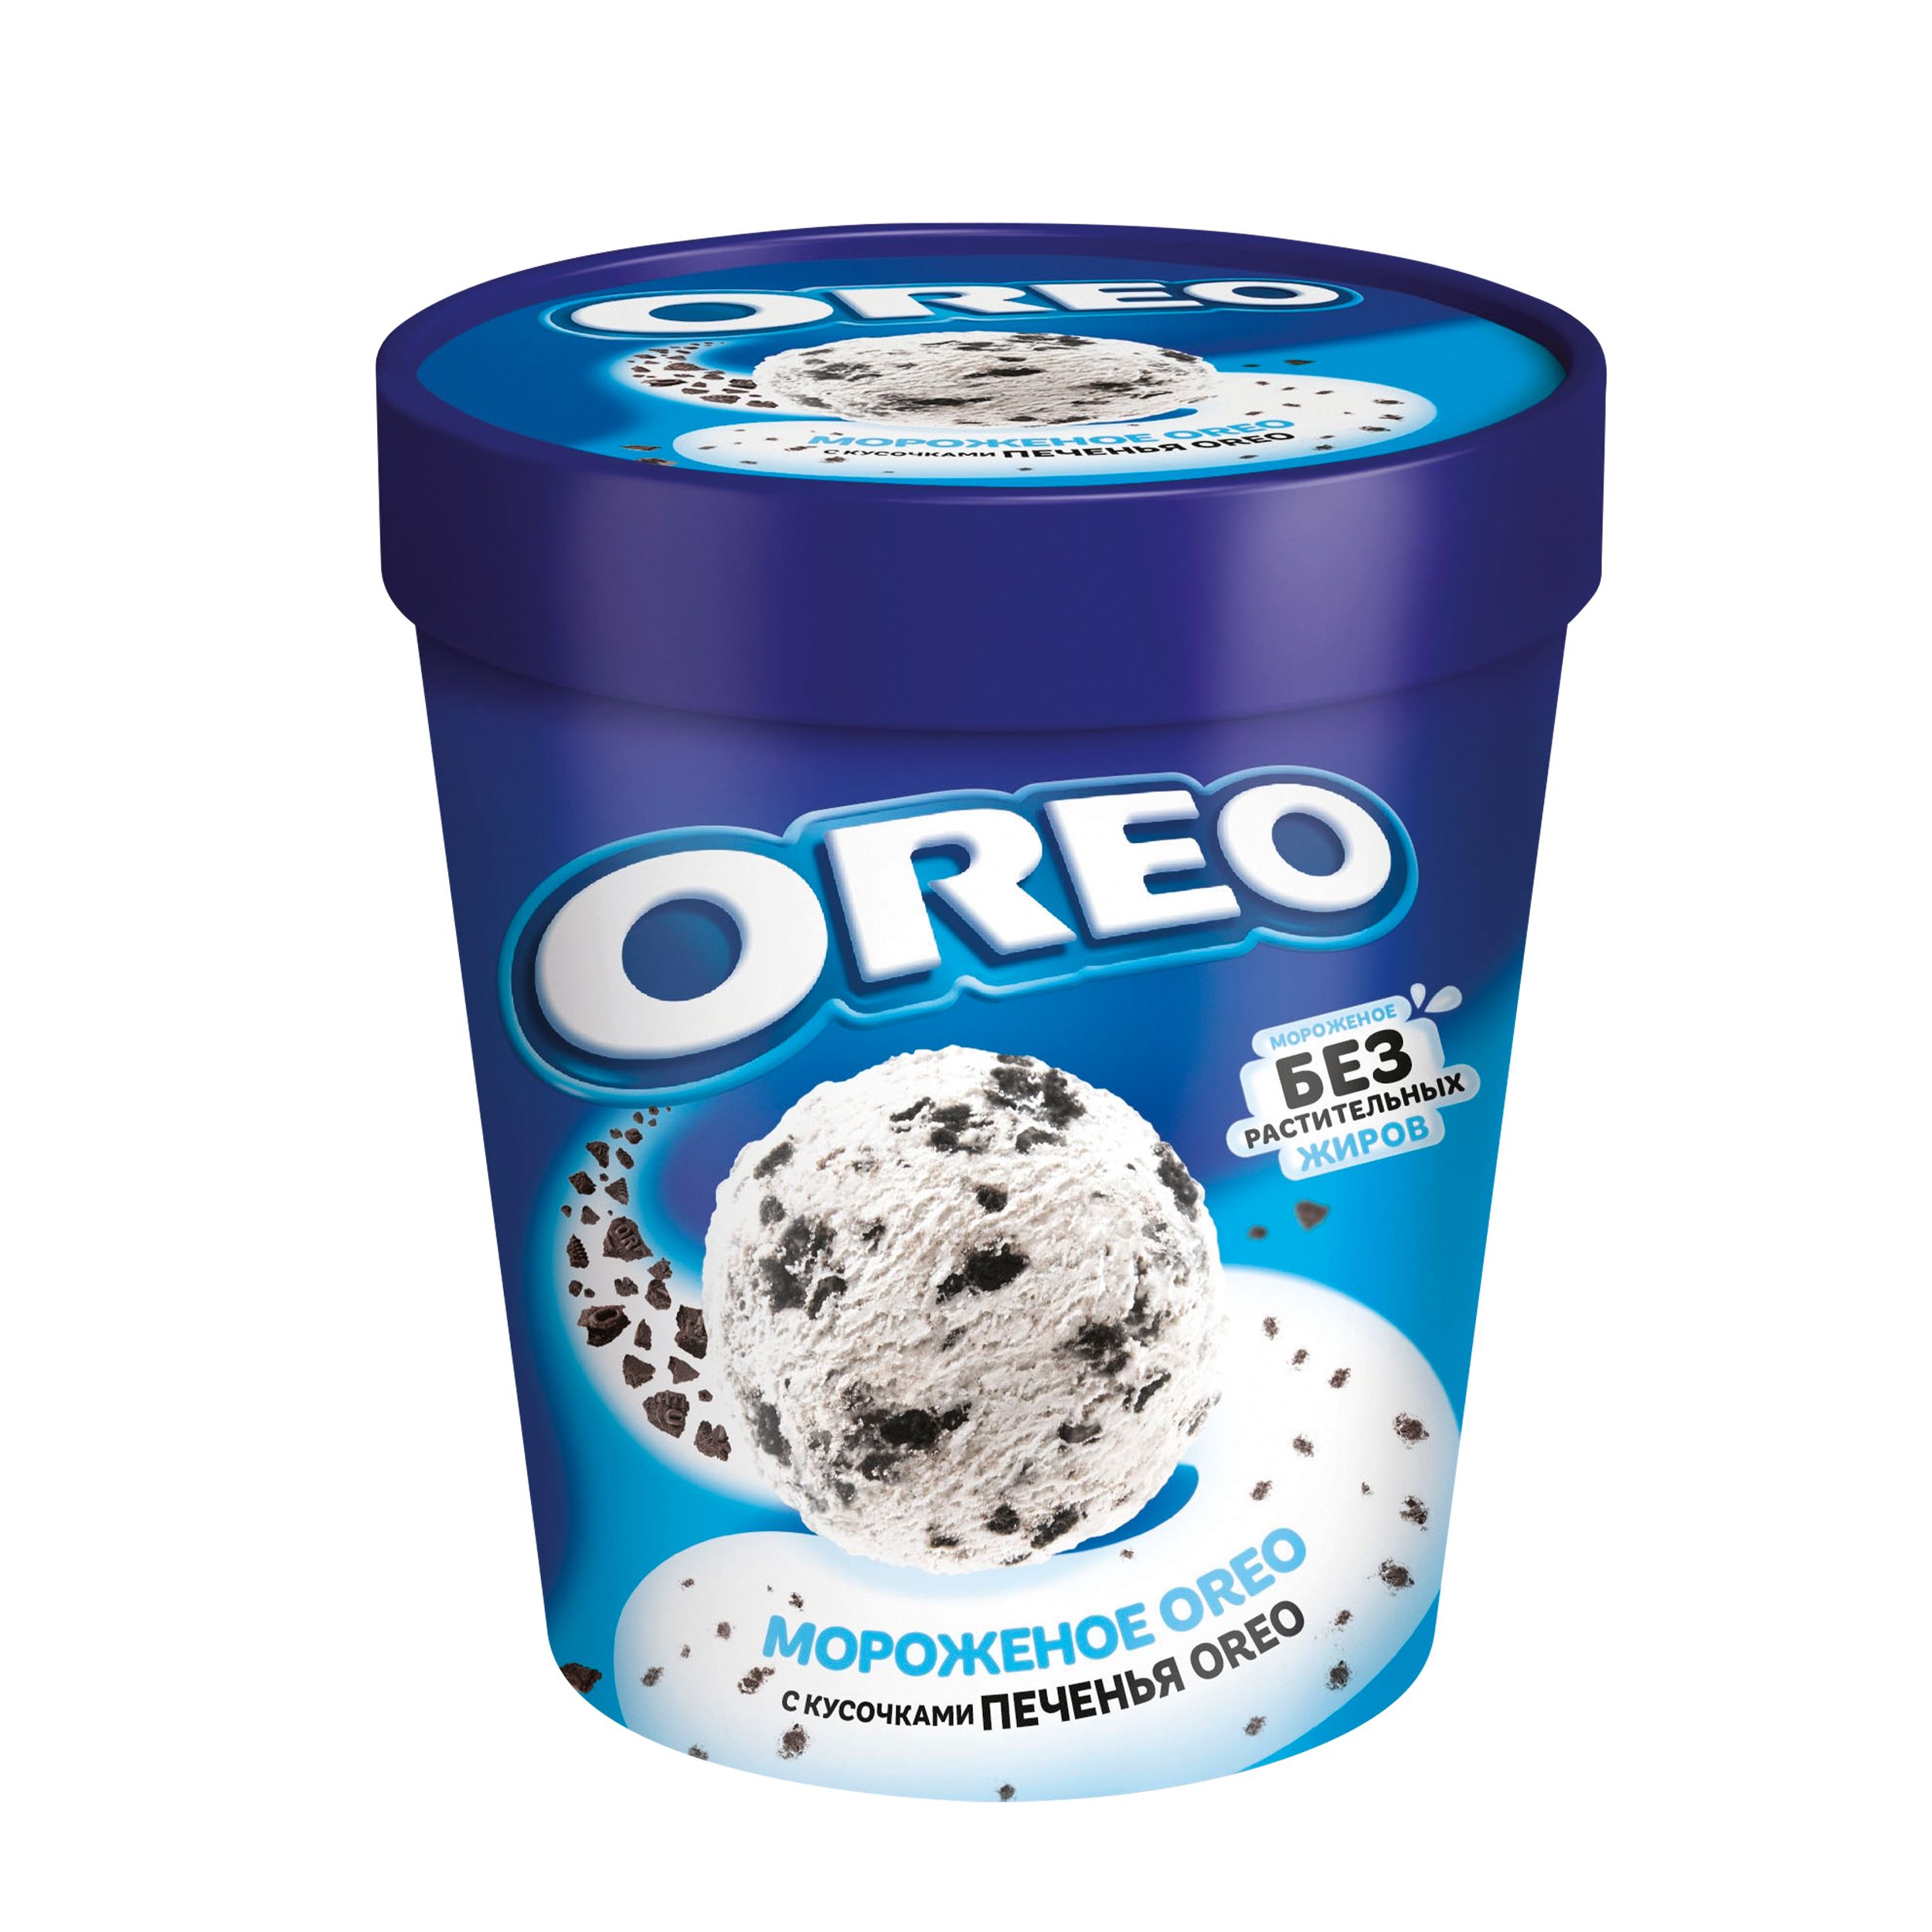 Мороженое орео ведро. Мороженое Орео 263г. Мороженое сливочное с дробленым печеньем Орео ведерко 480мл (263гр).